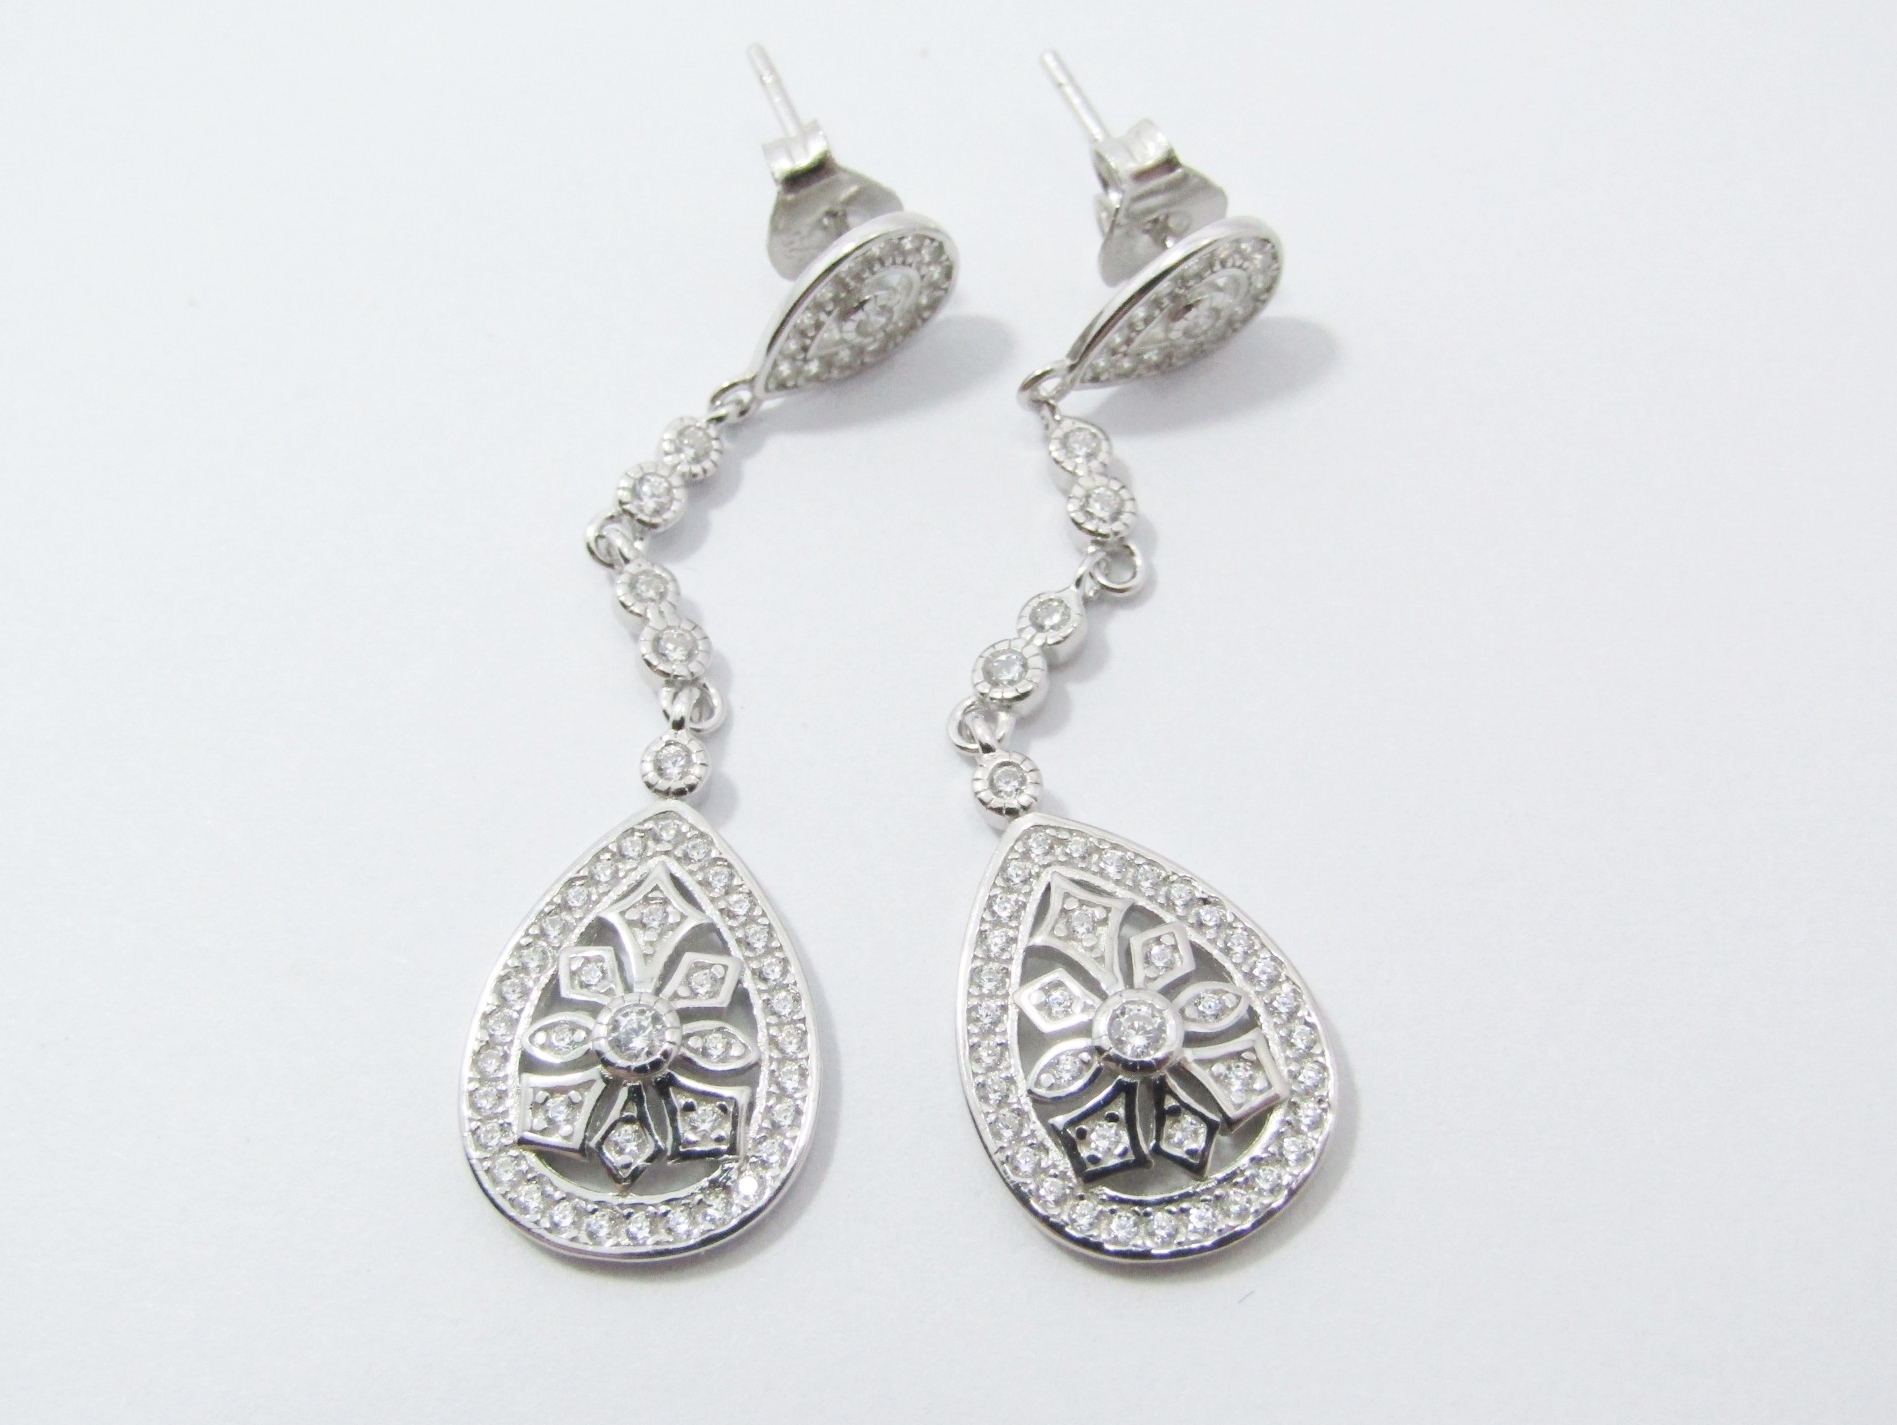 An Elegant pair of Zirconia Dangling Drop Earrings in Sterling Silver.